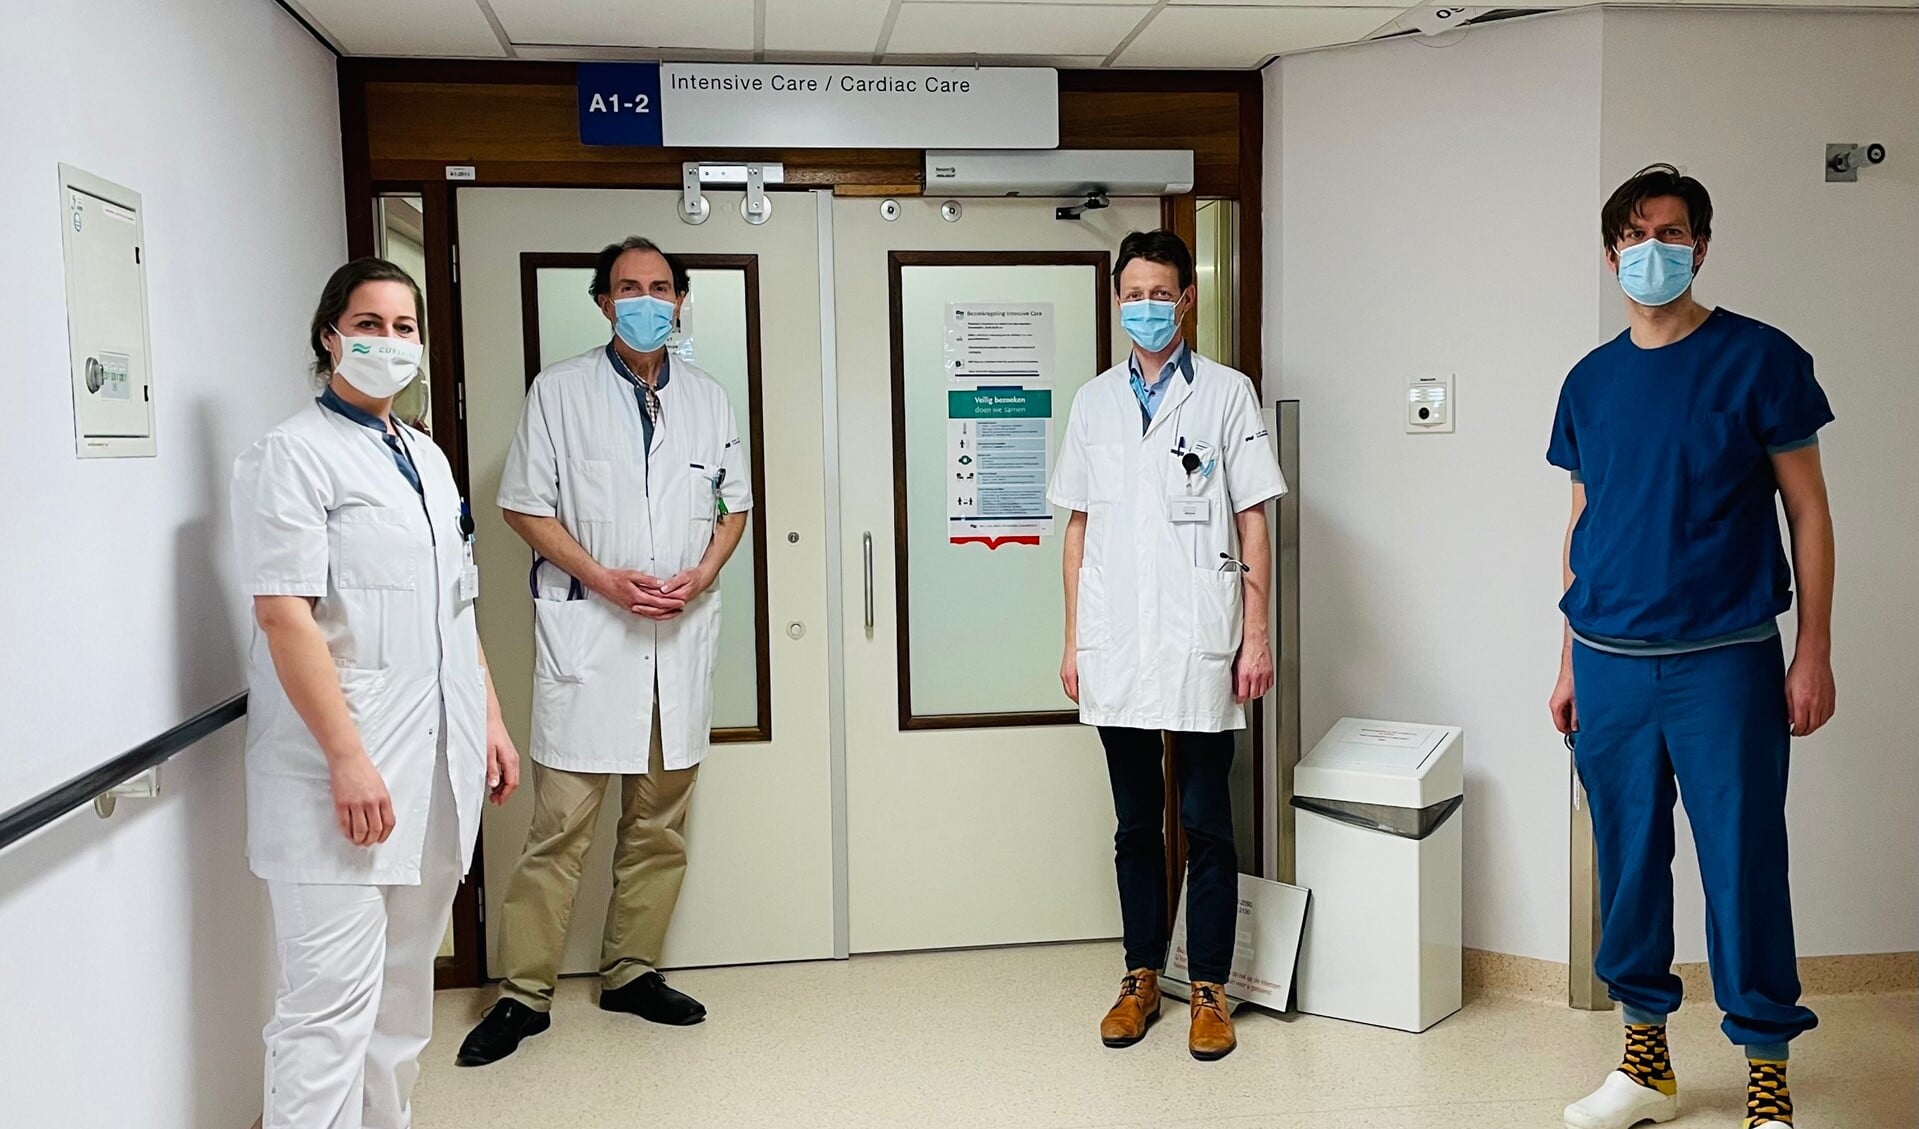 Het multidisciplinaire team uit het Van Weel-Bethesda Ziekenhuis dat voor de dagelijkse zorg rond covid-19 verantwoordelijk is. Van links naar rechts Eline van Dijk-Hurkens (physician assistent), Dr. Peter van Hal (longarts-immunoloog), Rien Dekkers (internist) en Sjoerd Thijsse (anesthesioloog-intensivist).